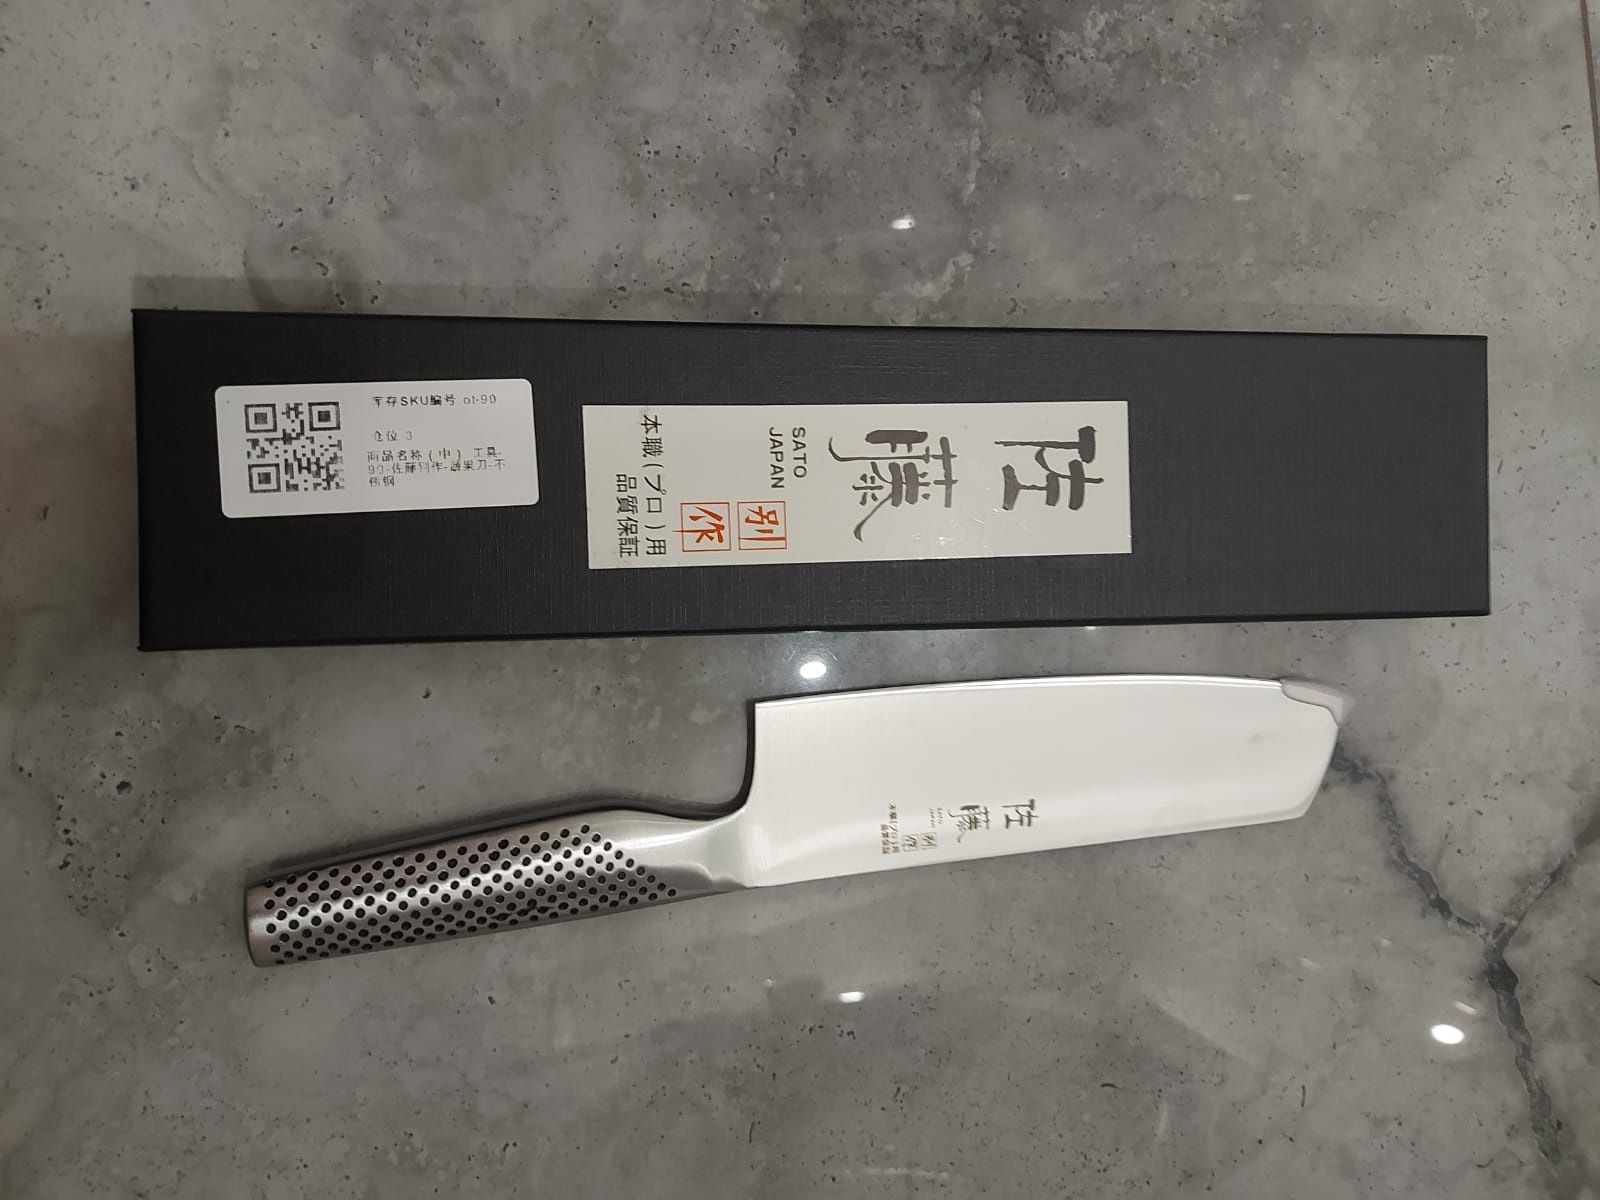 Japoński nóż do sushi G5, Nakiri 18 cm, niezbędnik w Twej kuchni